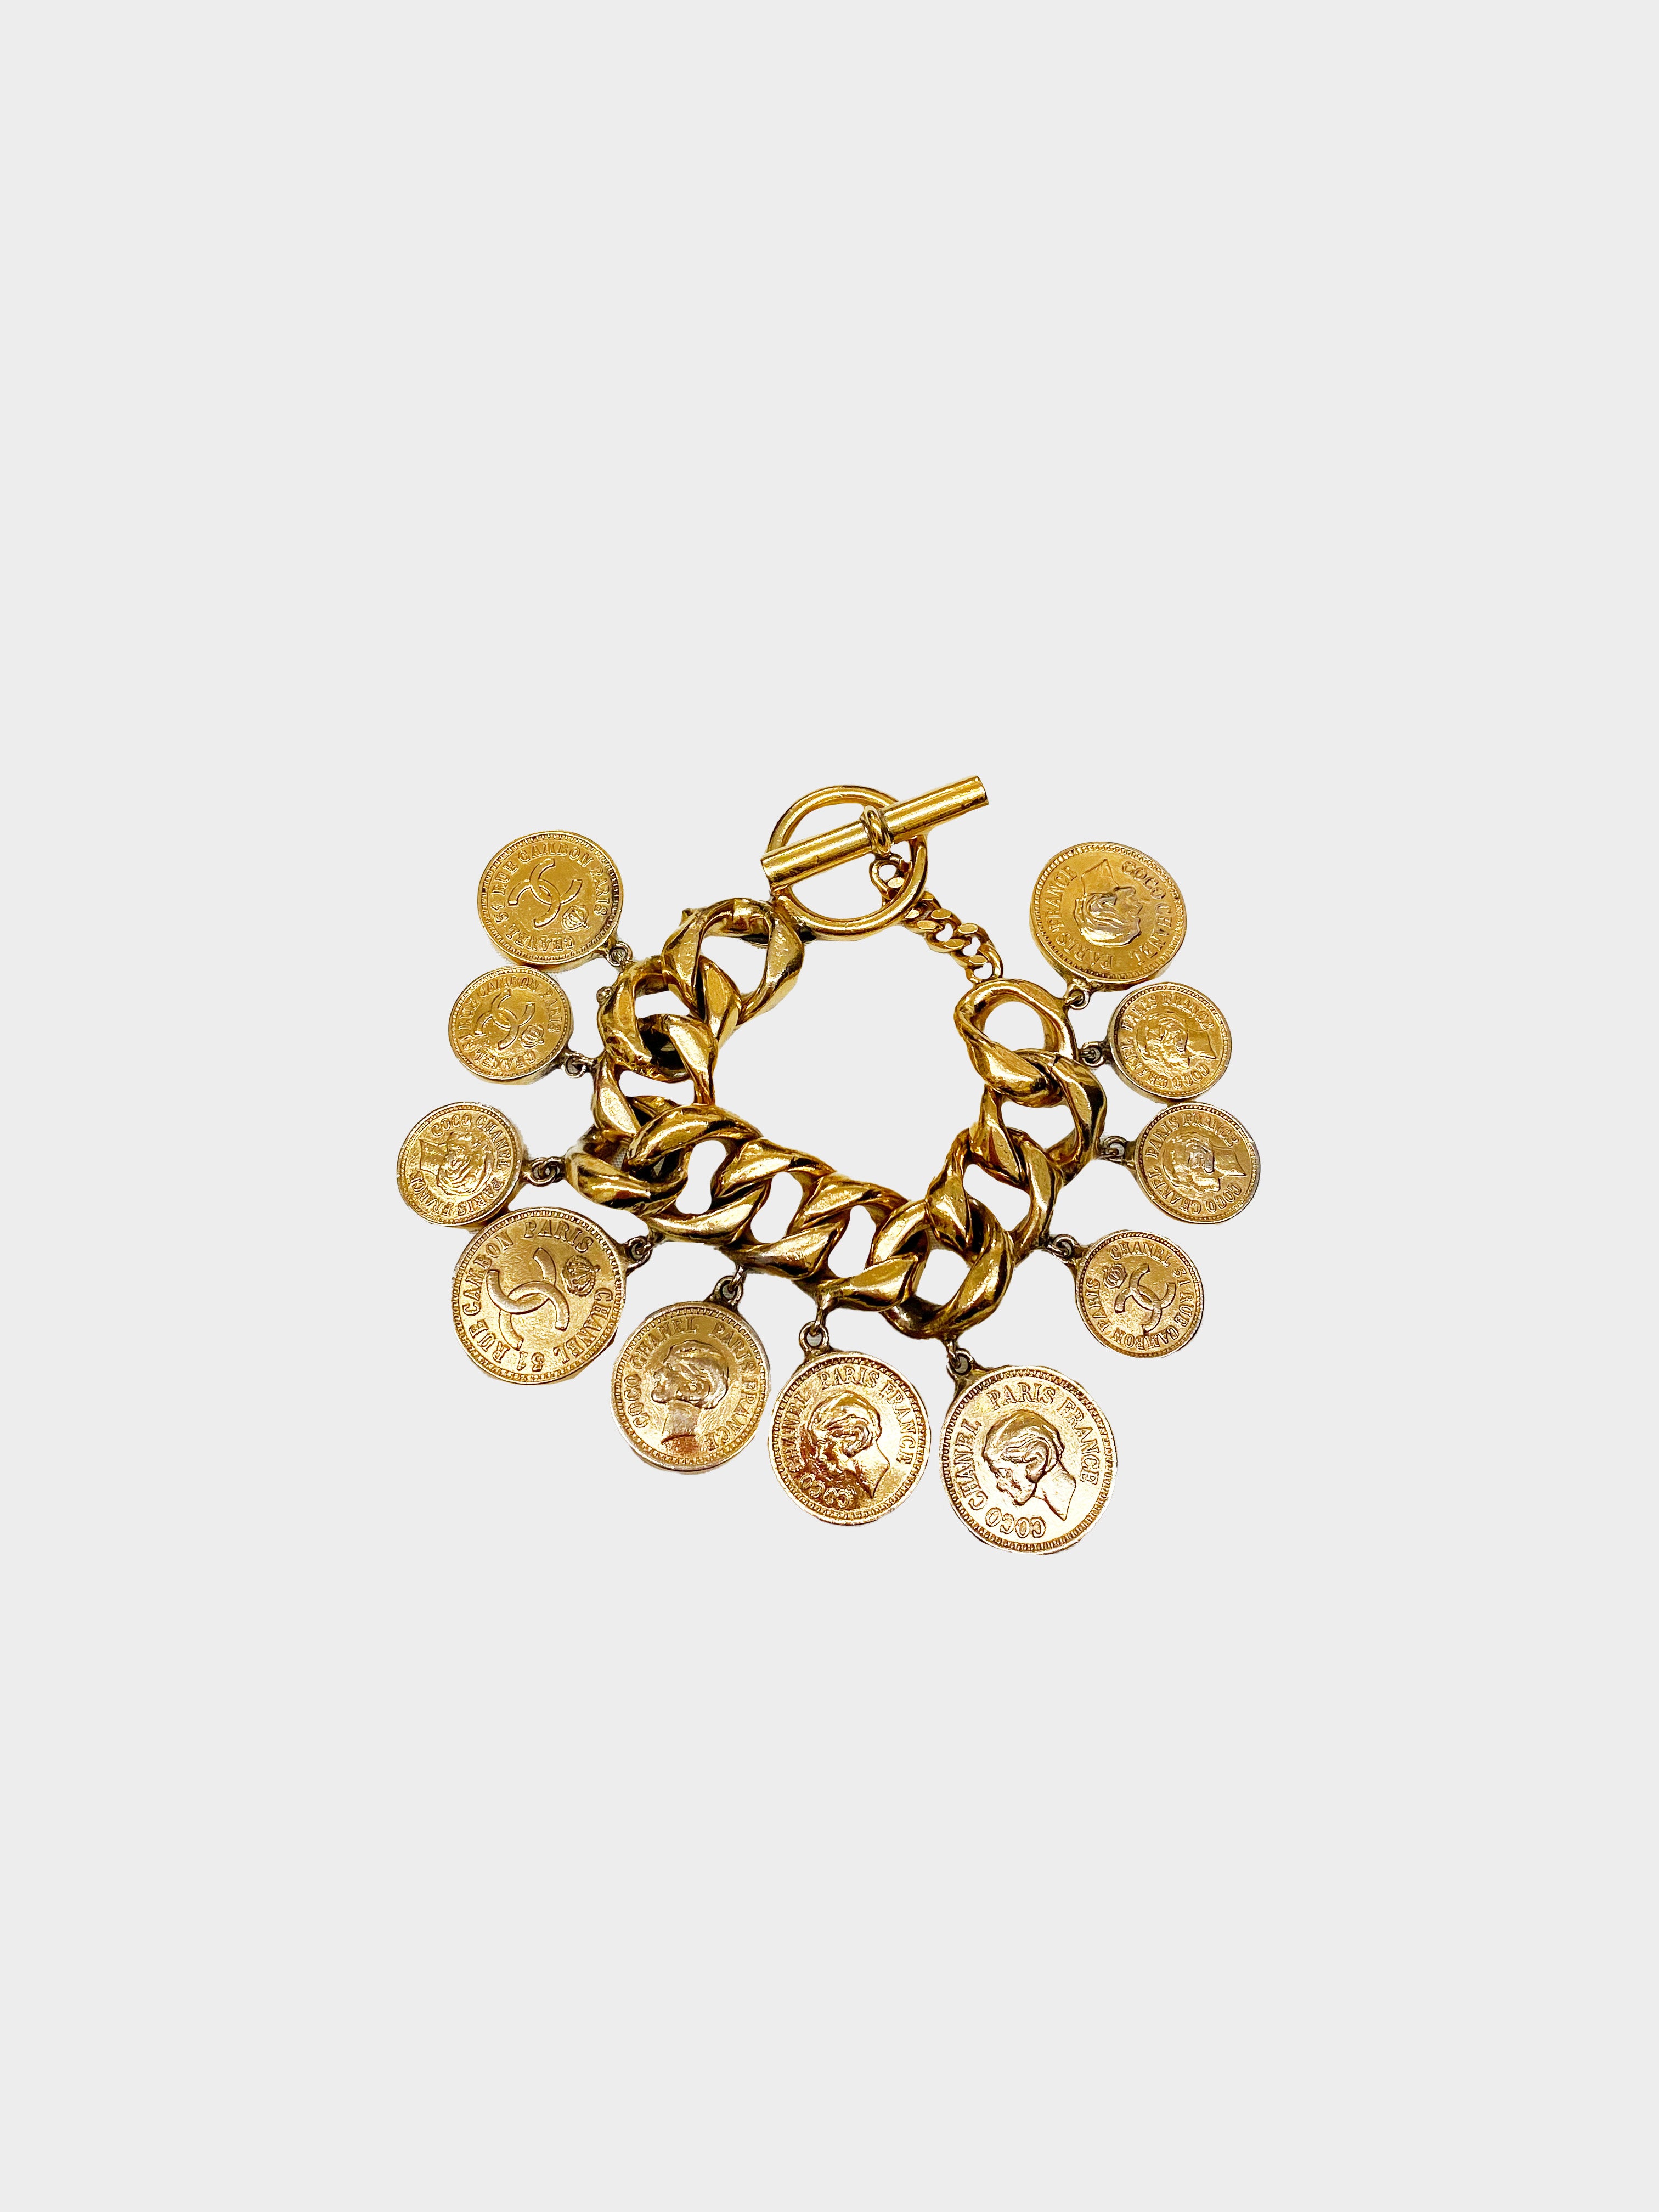 Chanel 1980s Coco Chanel Paris Coin Bracelet